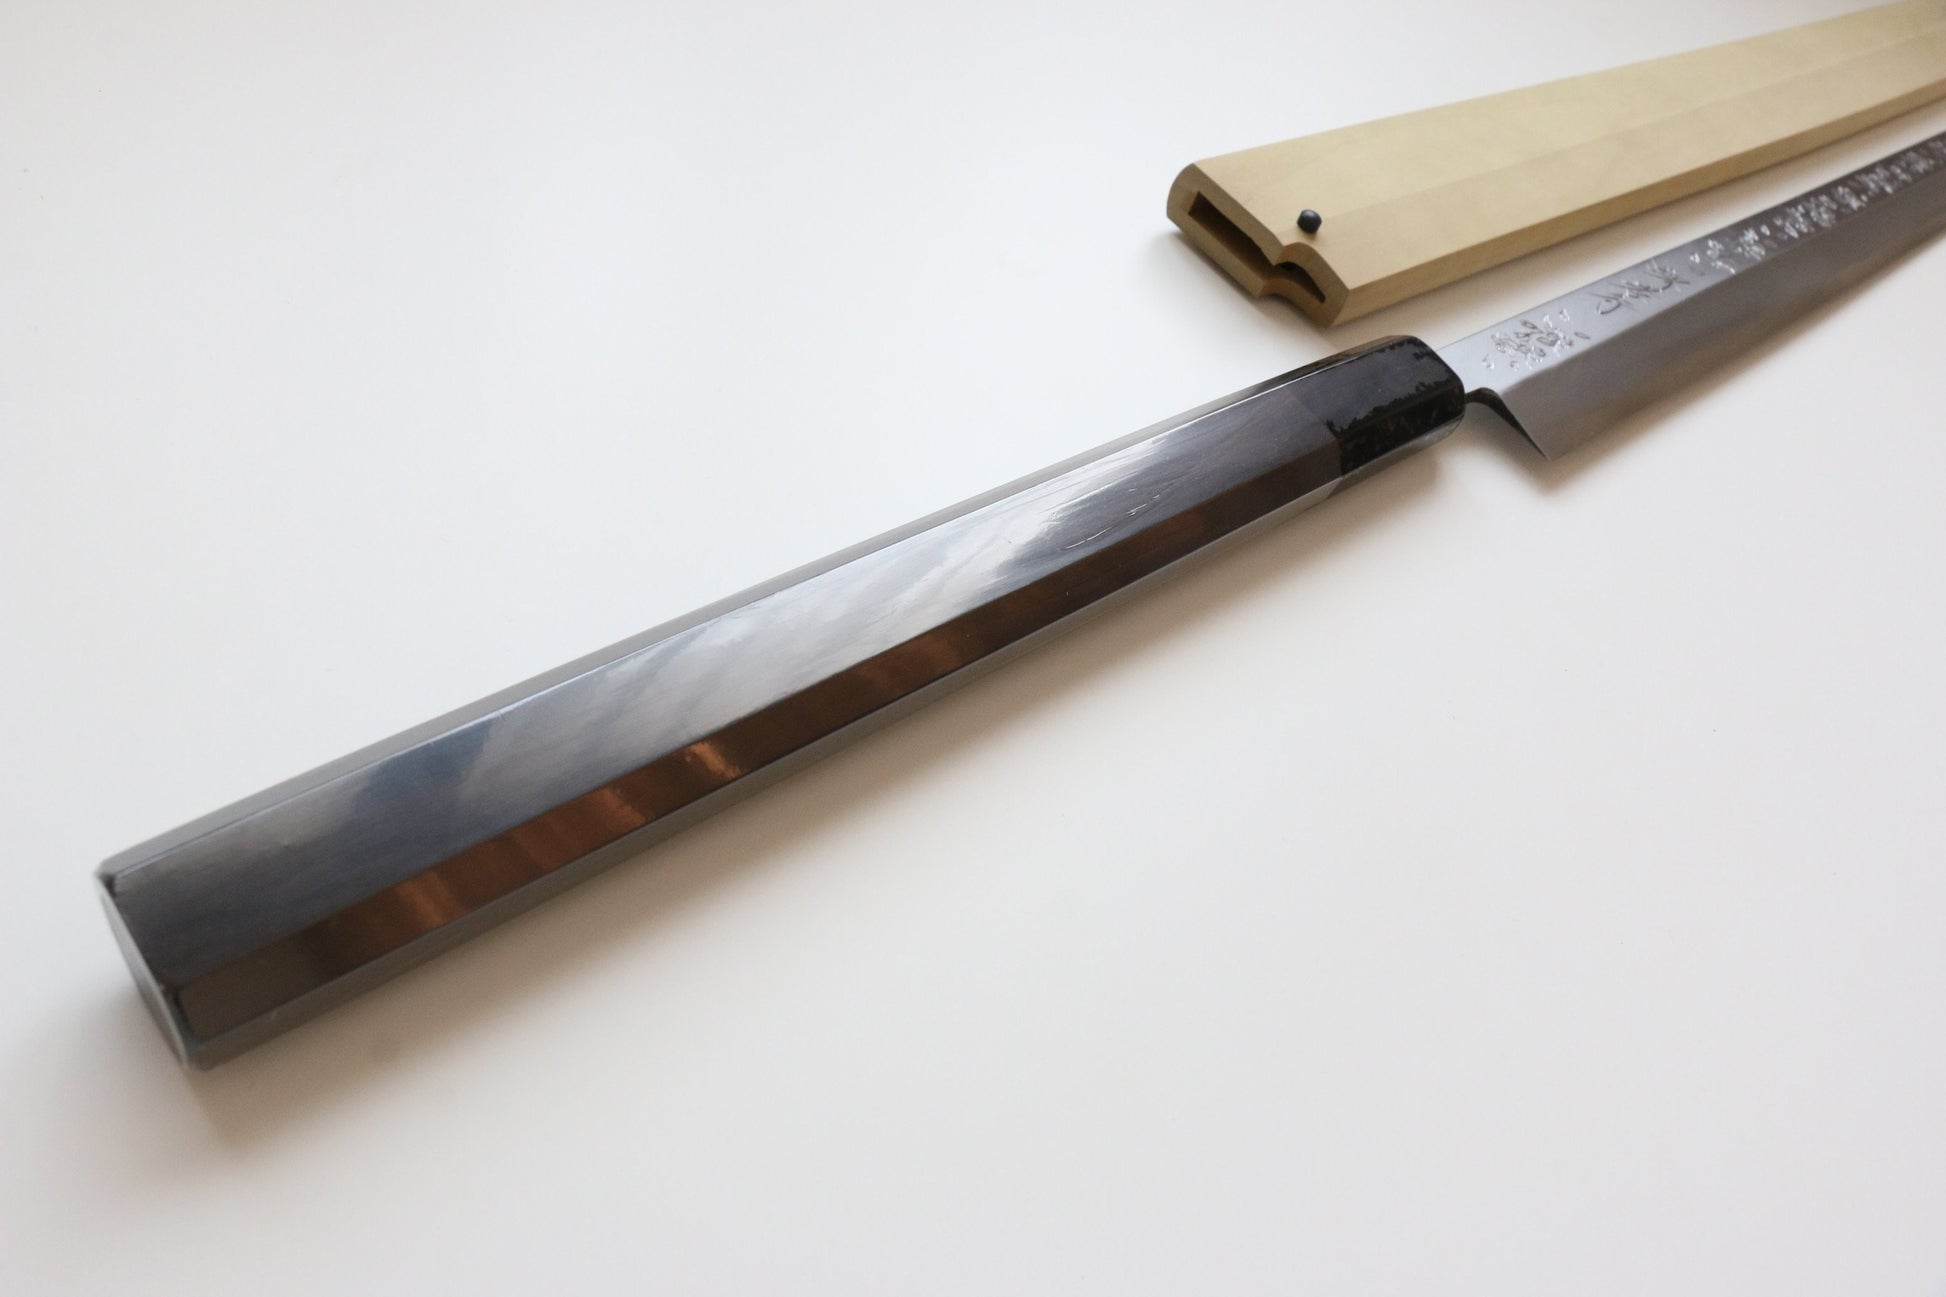 Sakai Takayuki White Steel No.2 Cherry blossom Engraved Tuna Japanese Knife 600mm Ebony Wood Handle with Sheath - Japanny - Best Japanese Knife